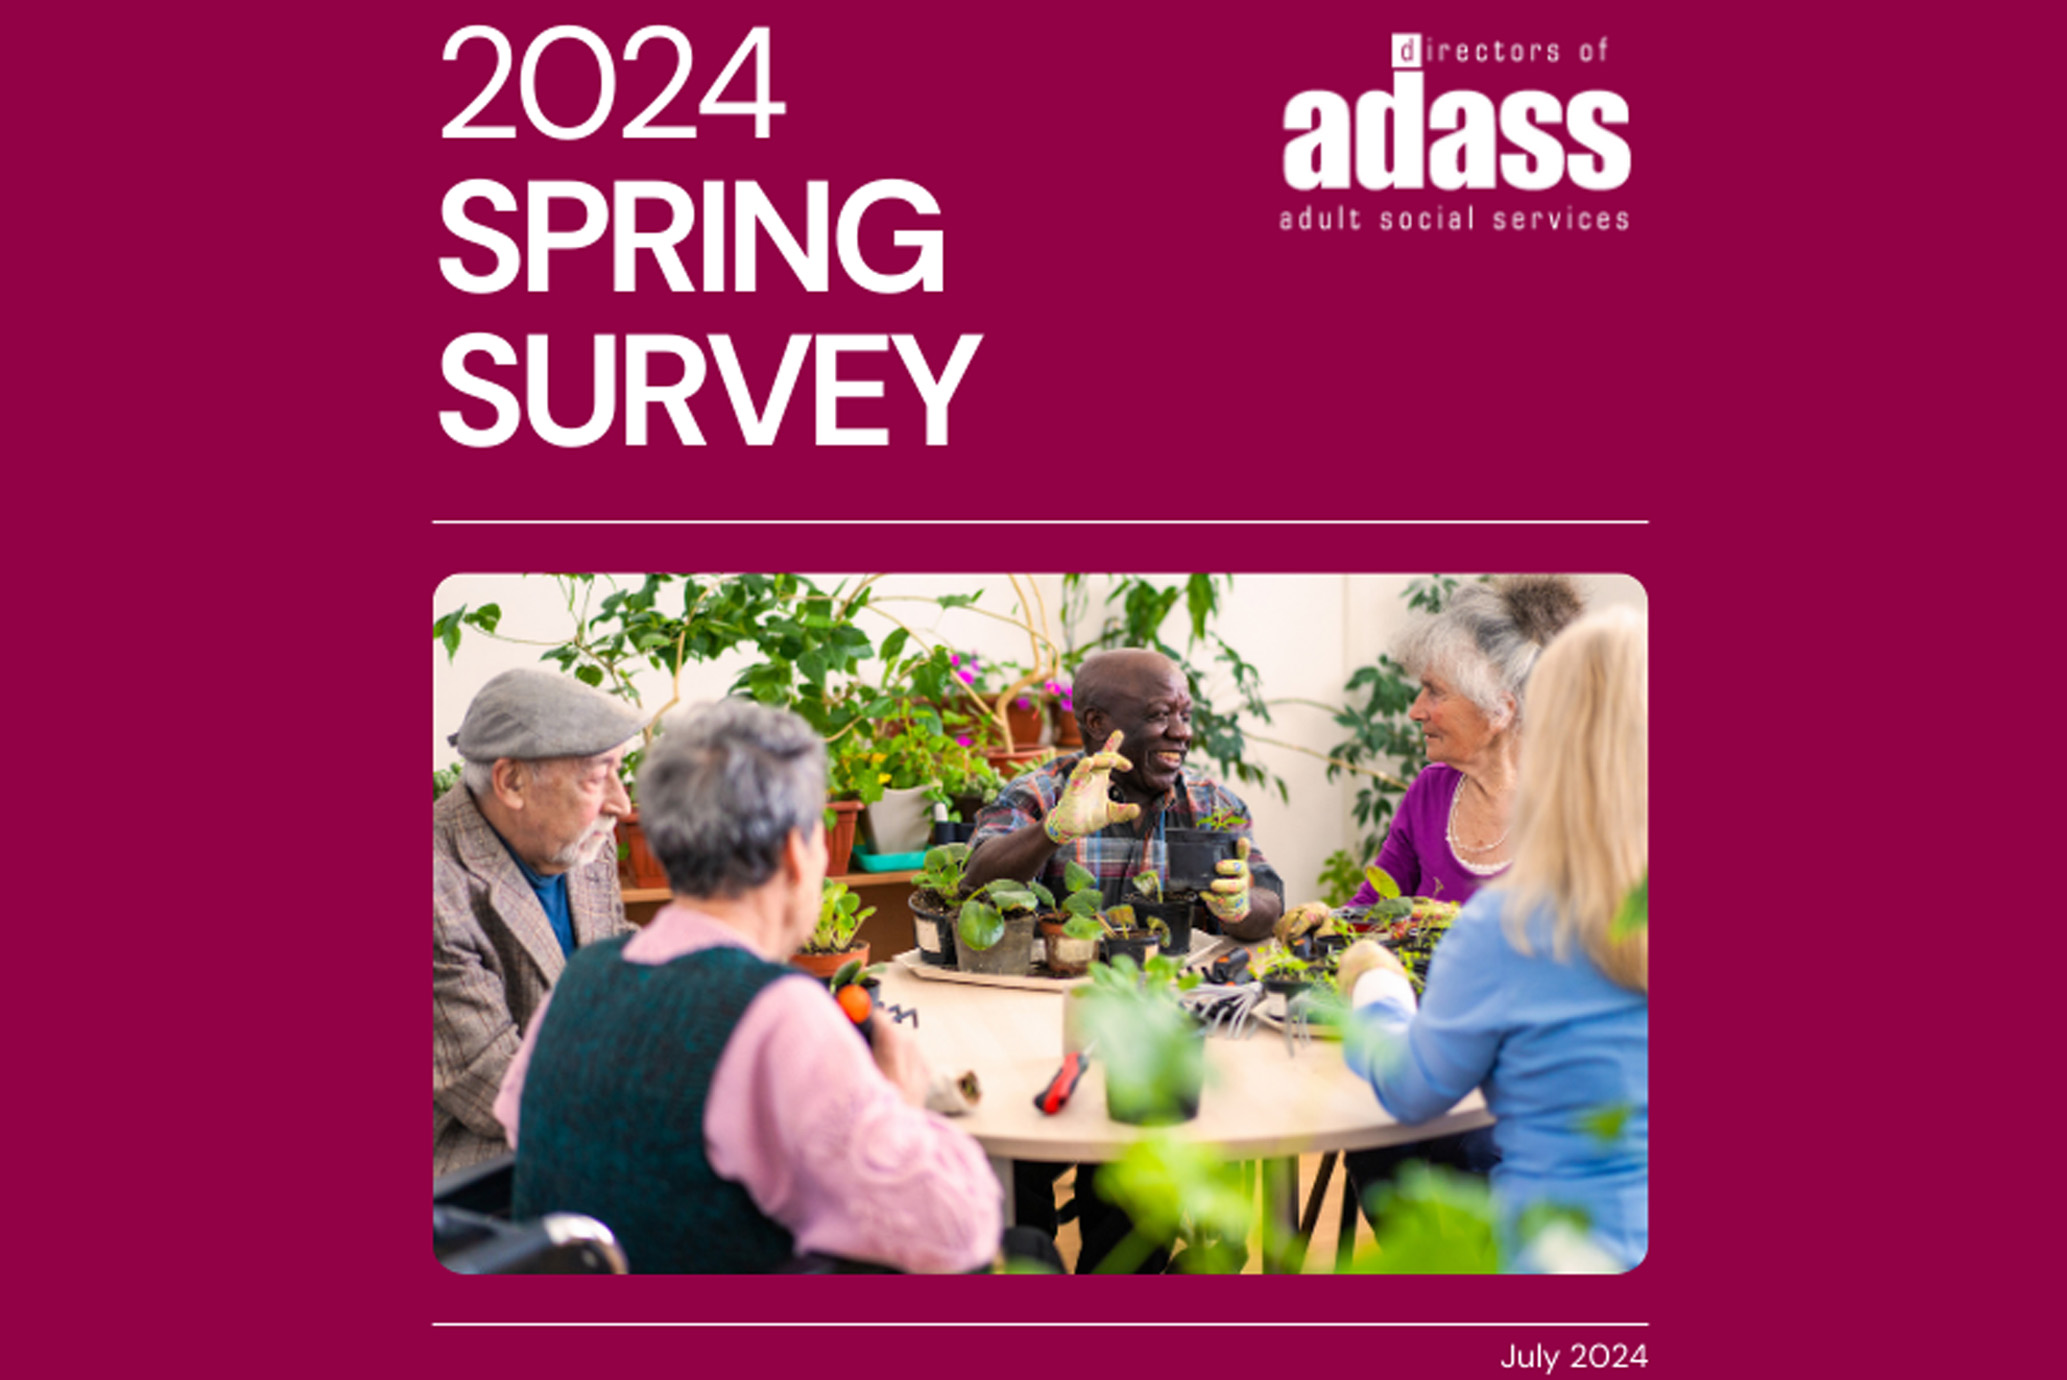 ADASS Spring Survey graphic